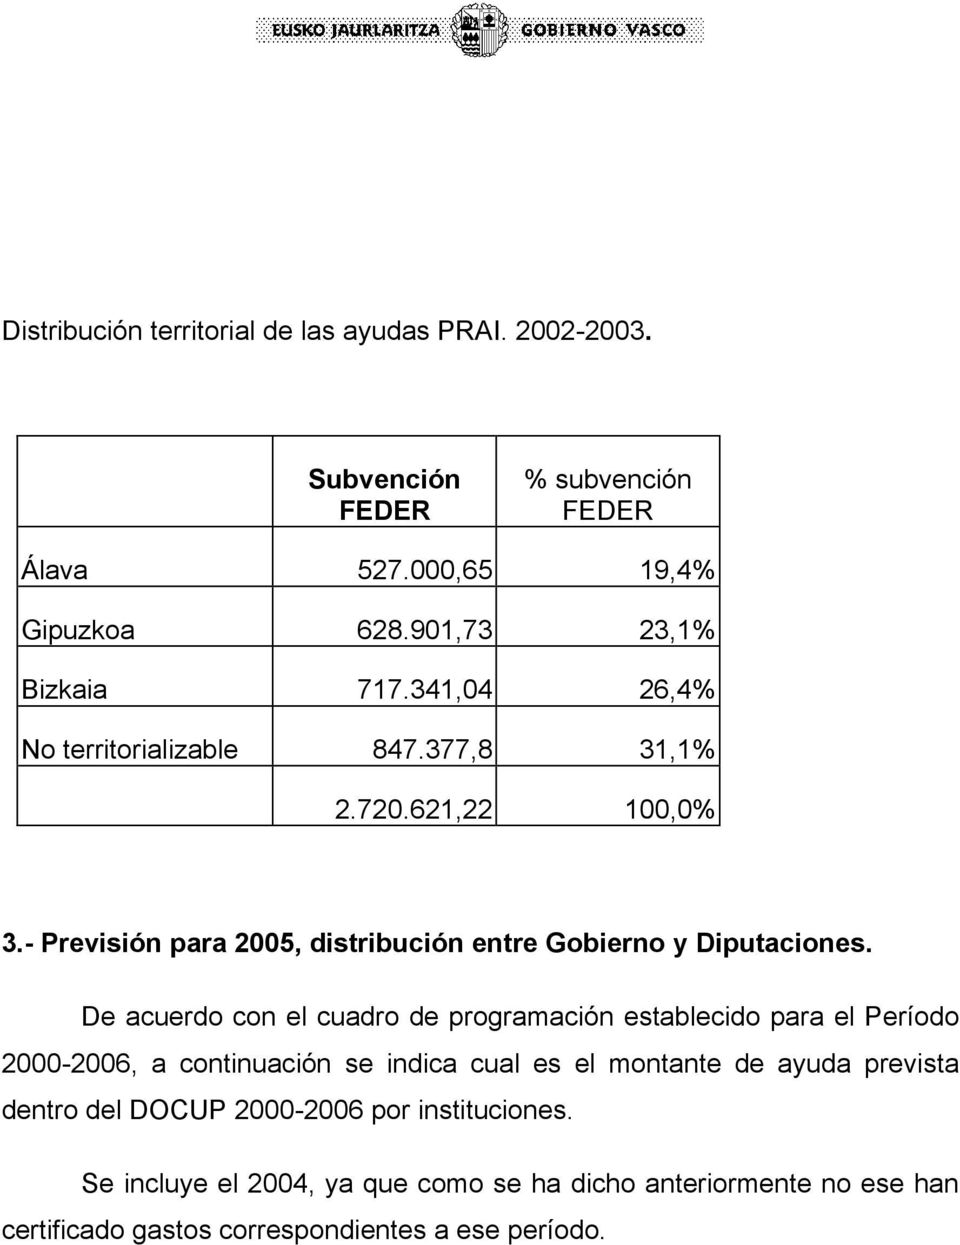 - Previsión para 2005, distribución entre Gobierno y Diputaciones.